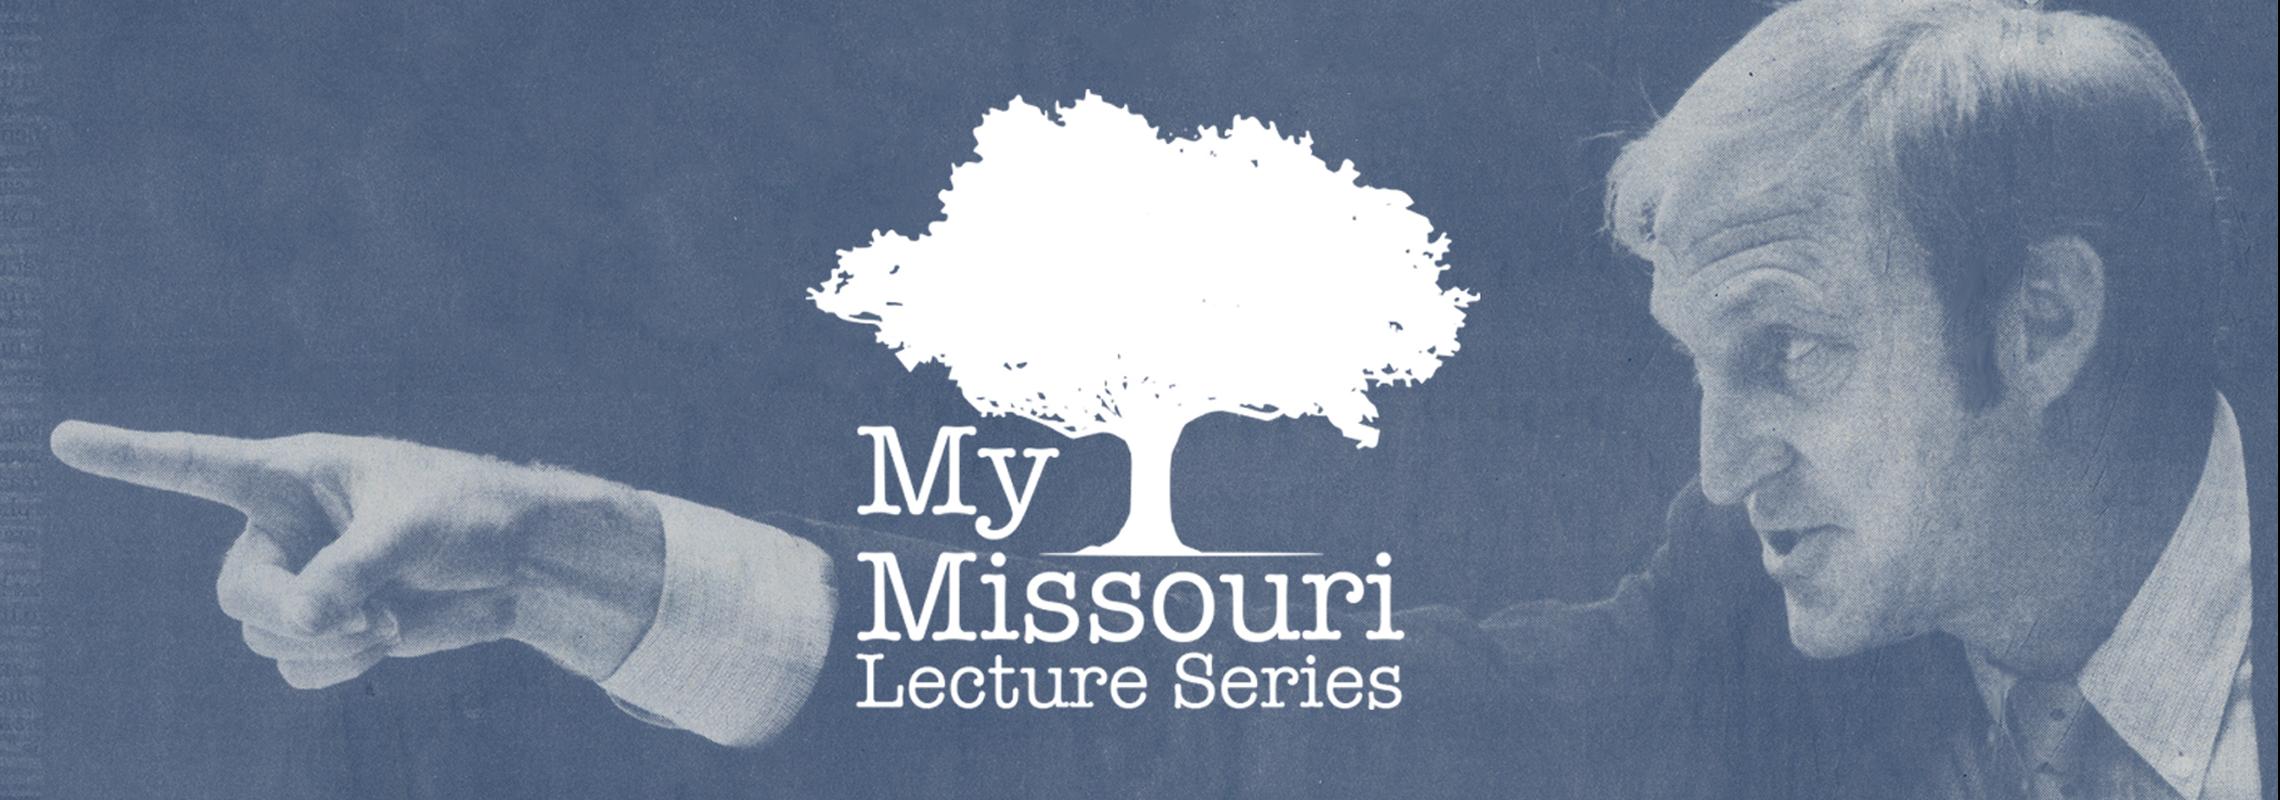 My Missouri Lecture Series Norm Stewart